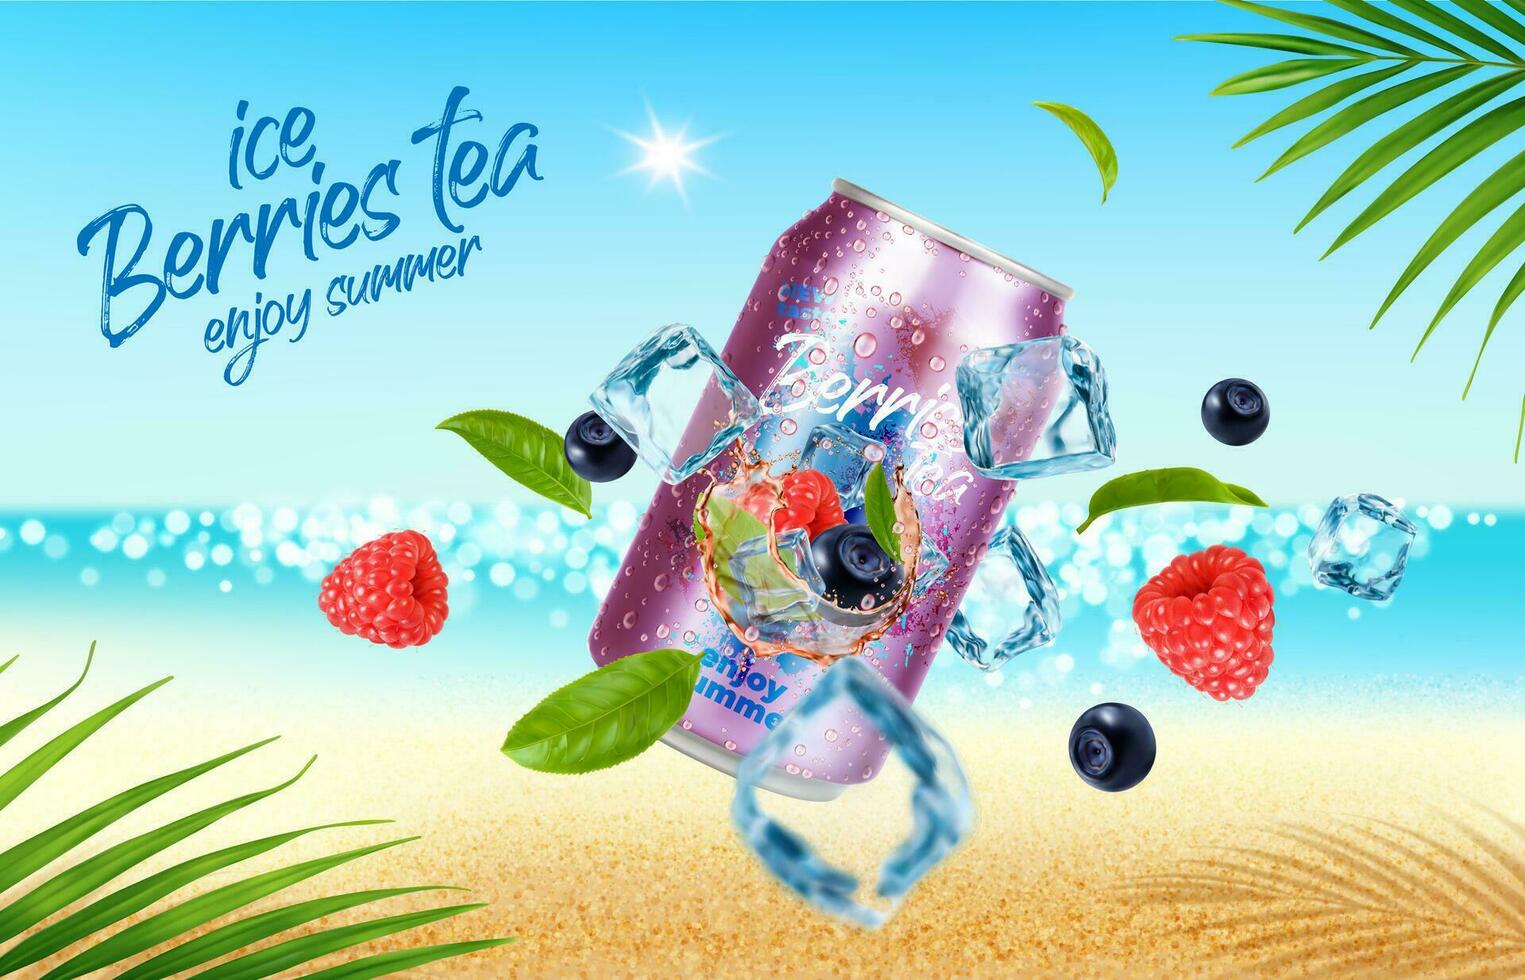 selvaggio frutti di bosco tè può e ghiaccio cubi su estate spiaggia vettore